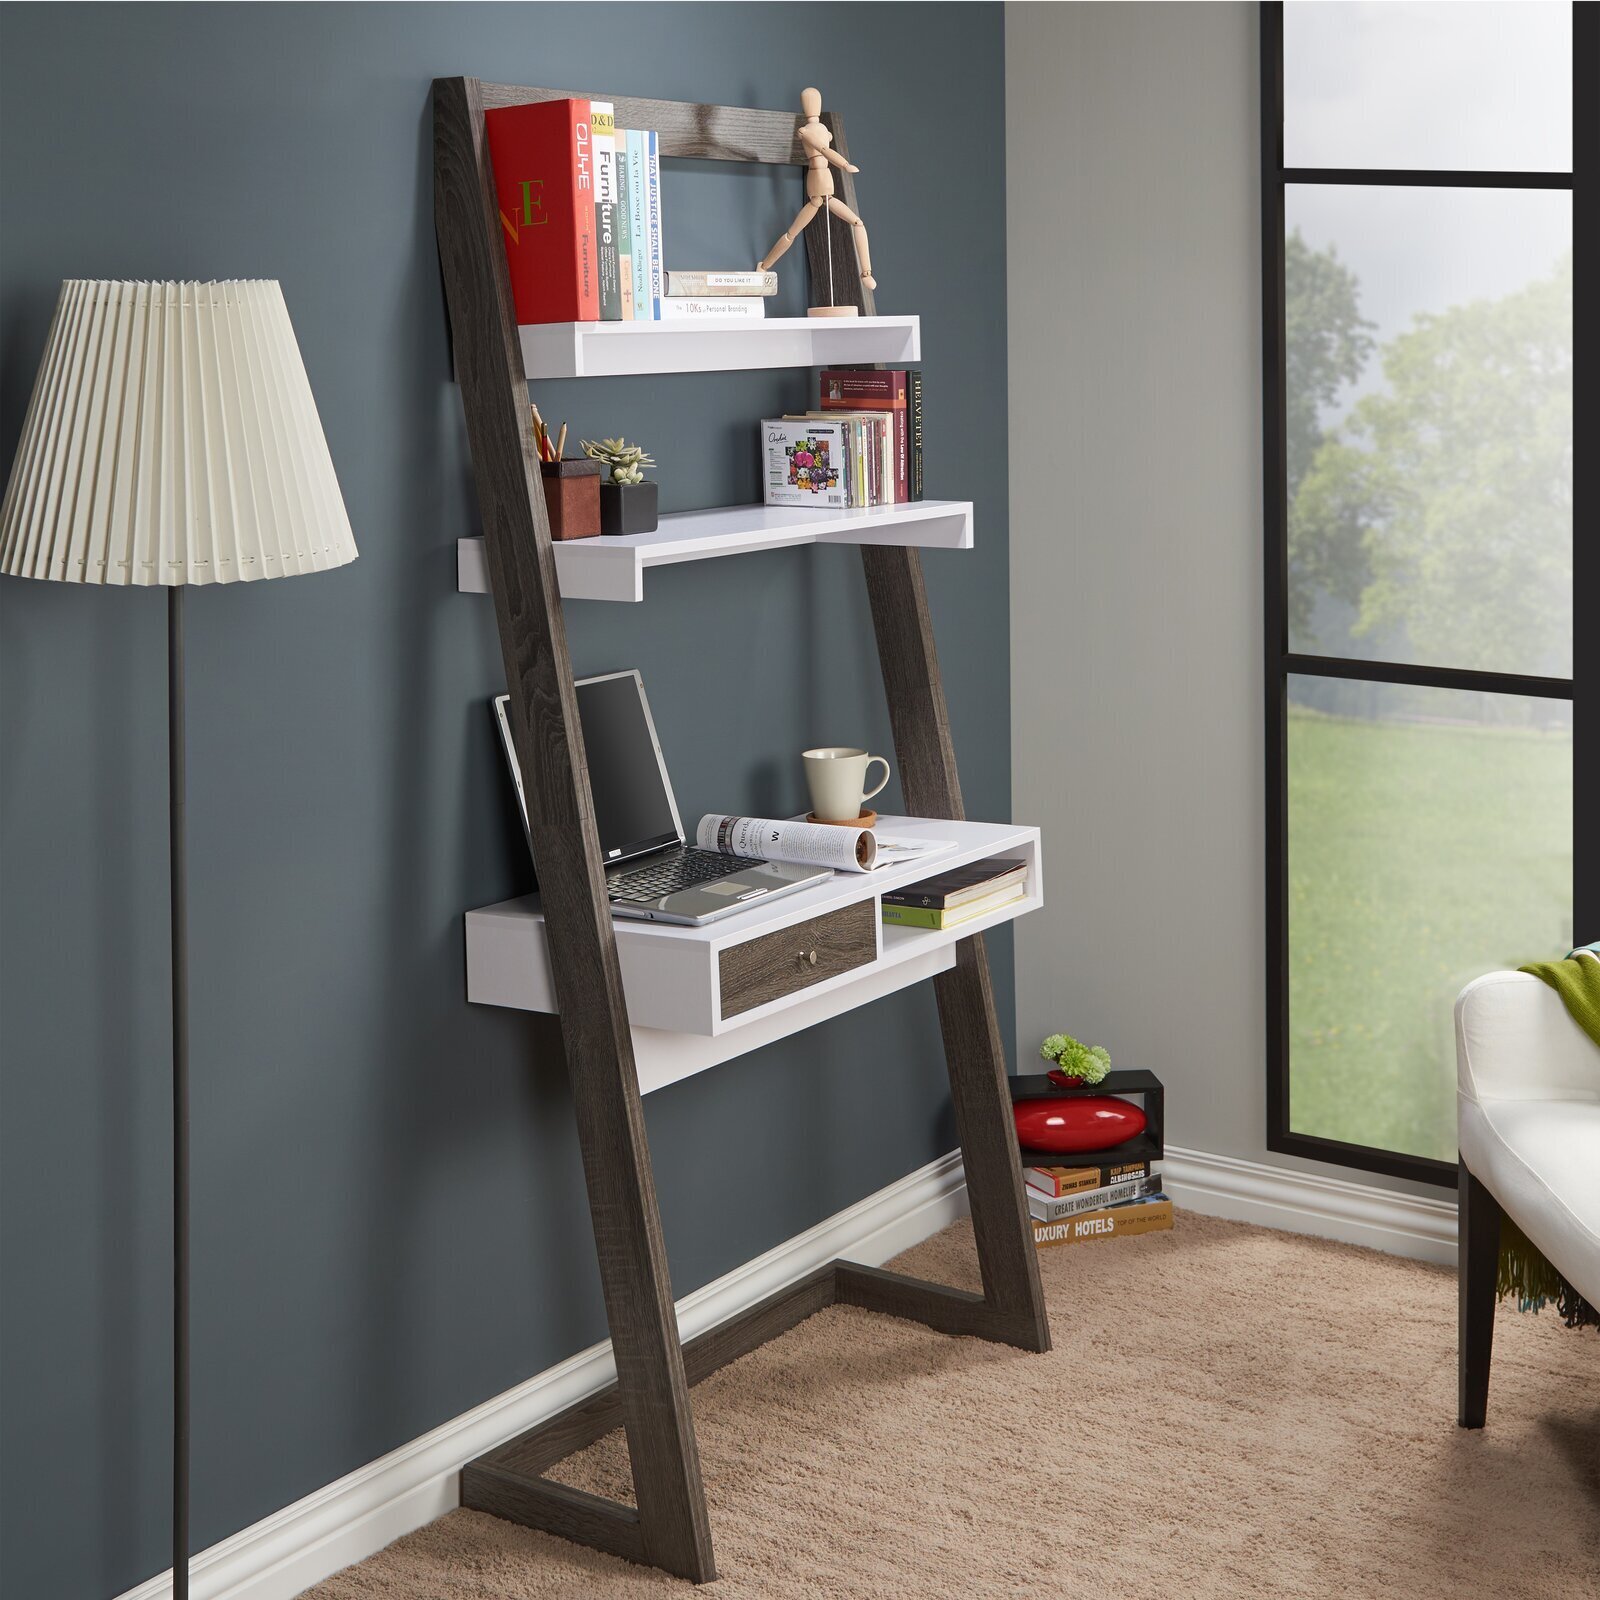 Ladder Desk With Shelves Above